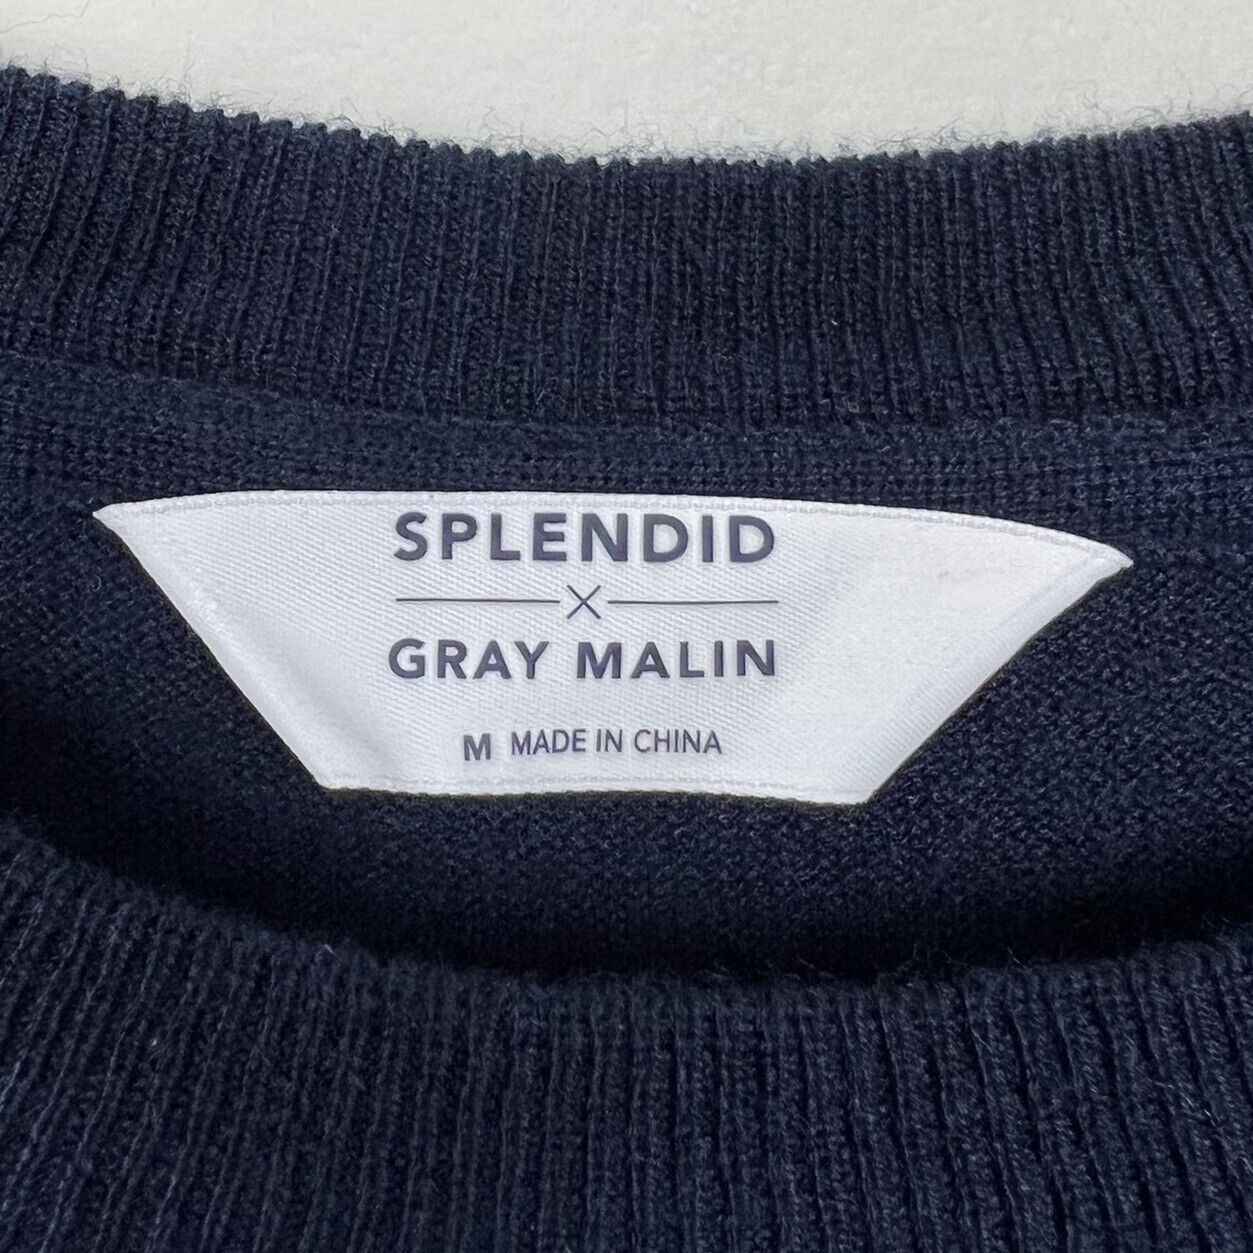 Splendid x Gray Malin Sunray Sweater Linen Blend Colorblock Striped Women's  Sz M | eBay